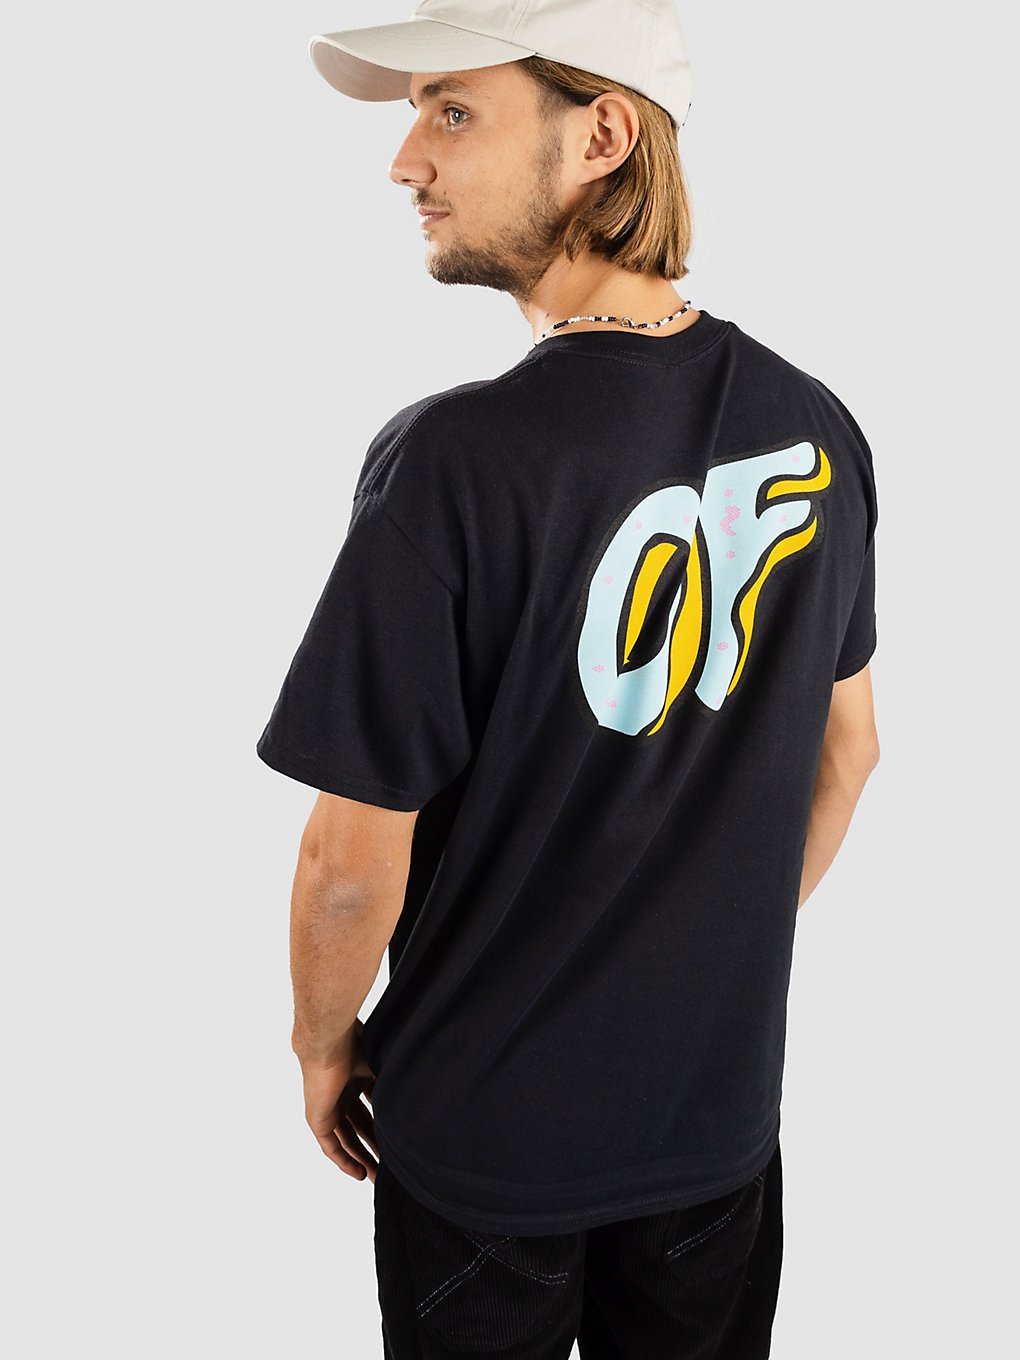 Odd Future Logo F&B T-Shirt black kaufen